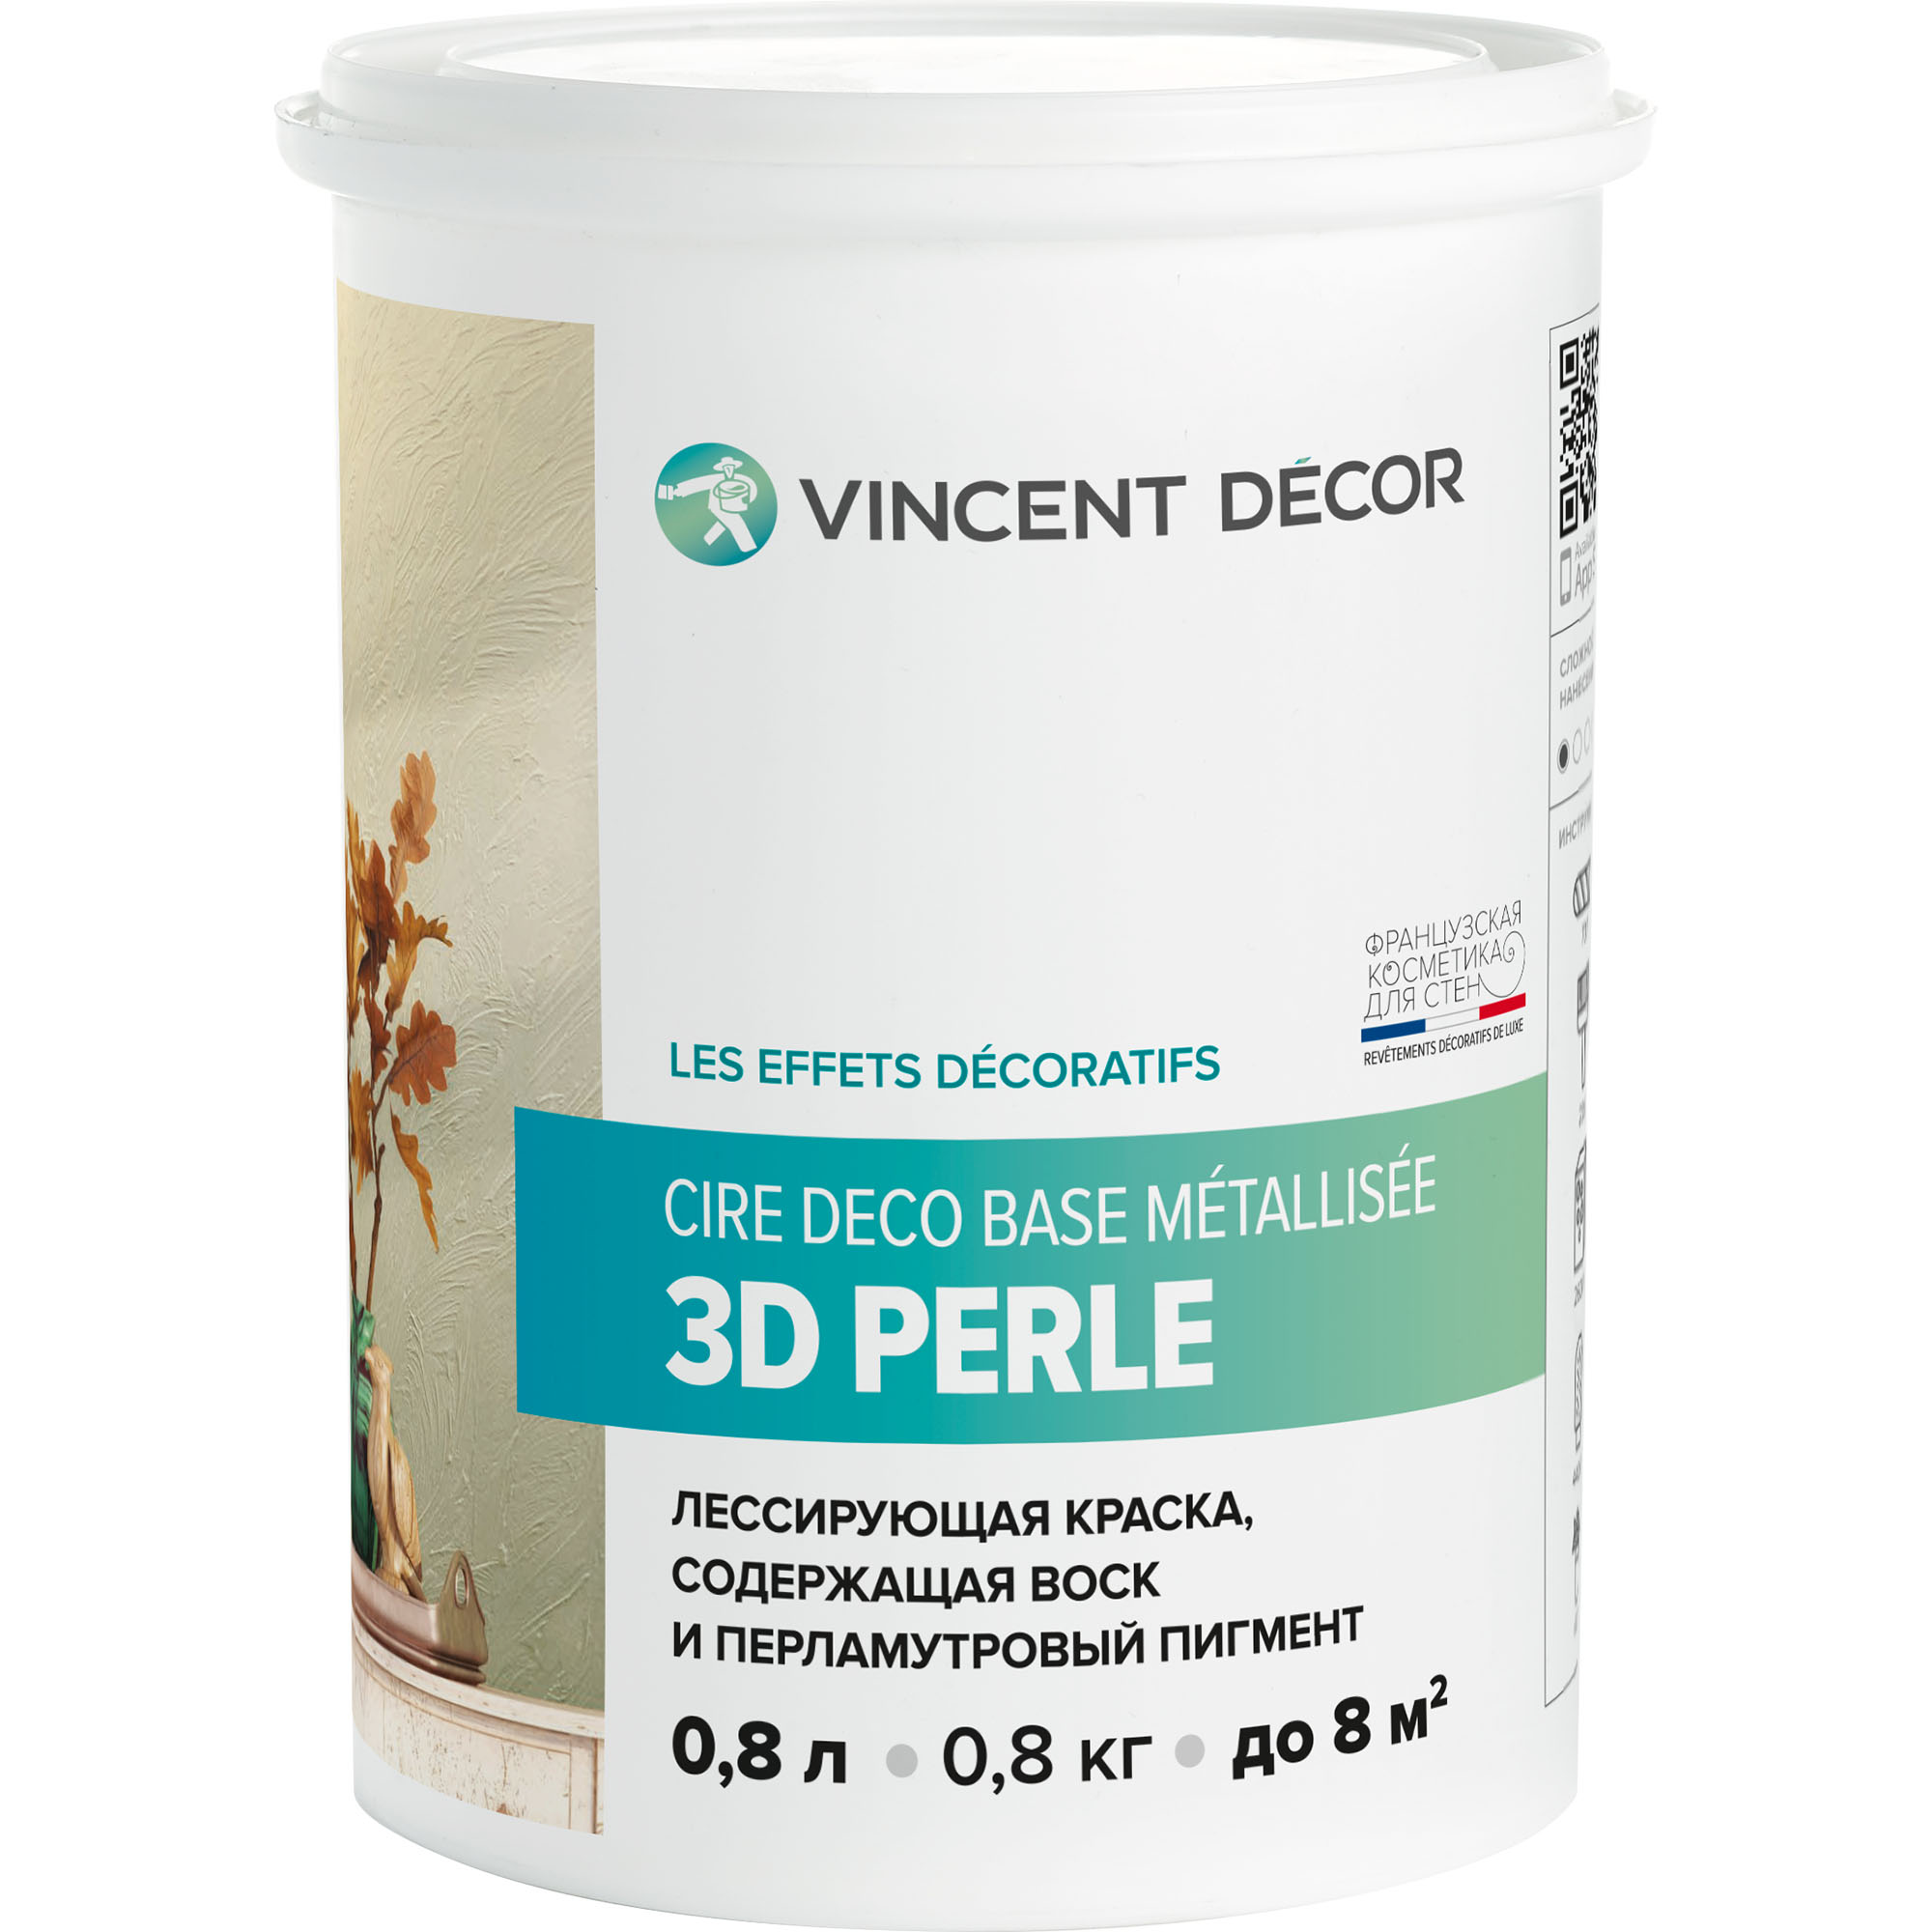 Краска лессирующая для декоративных покрытий Vincent Decor Cire deco base Metallisee 3D Perle золотистый перламутр 0,8 л краска лазурь vincent maison en bois база c 2 л